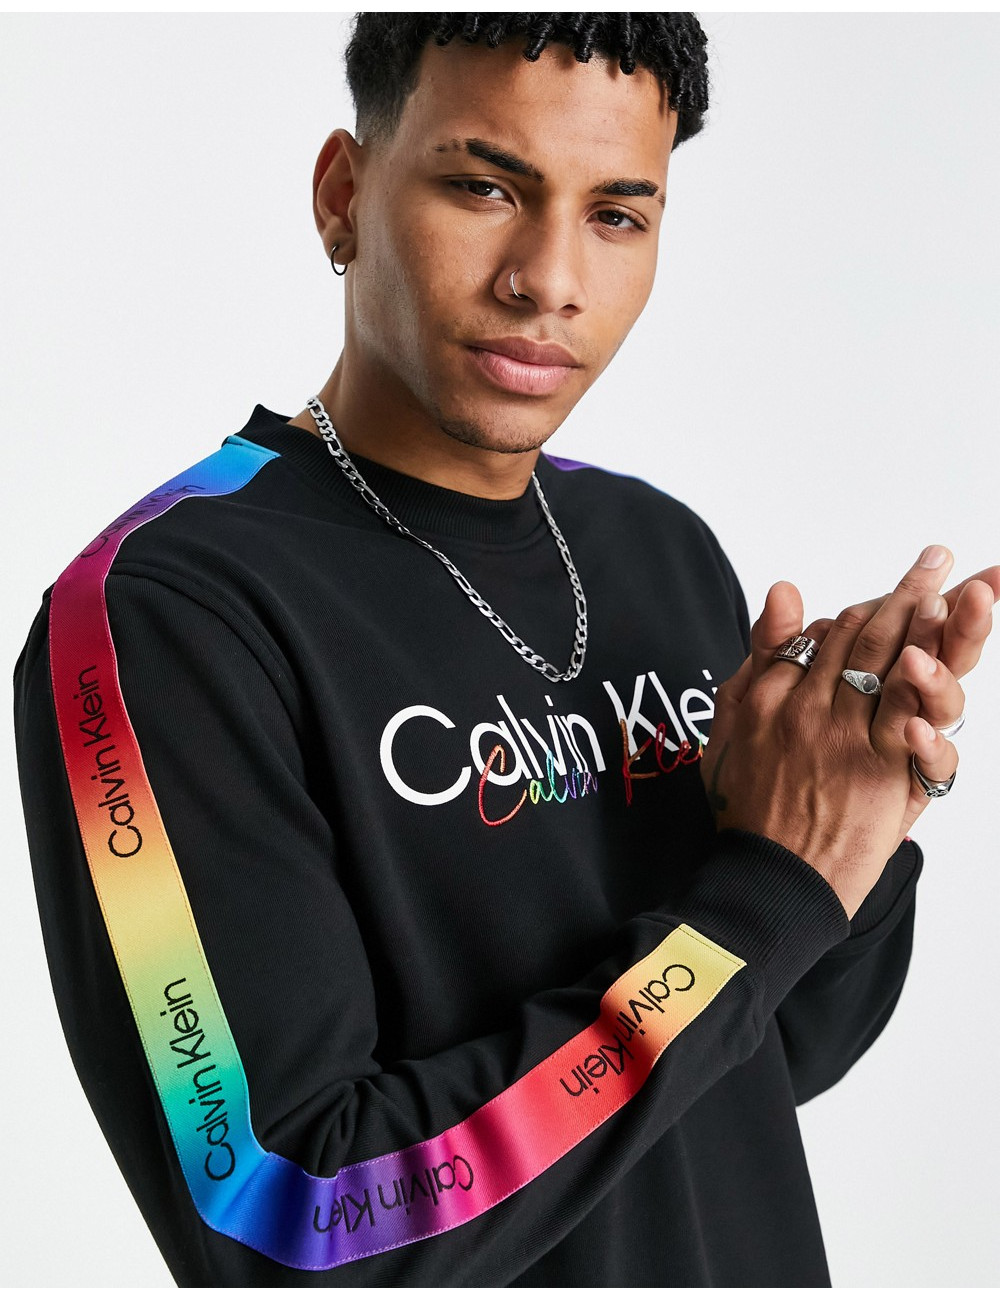 Calvin Klein Pride rainbow...